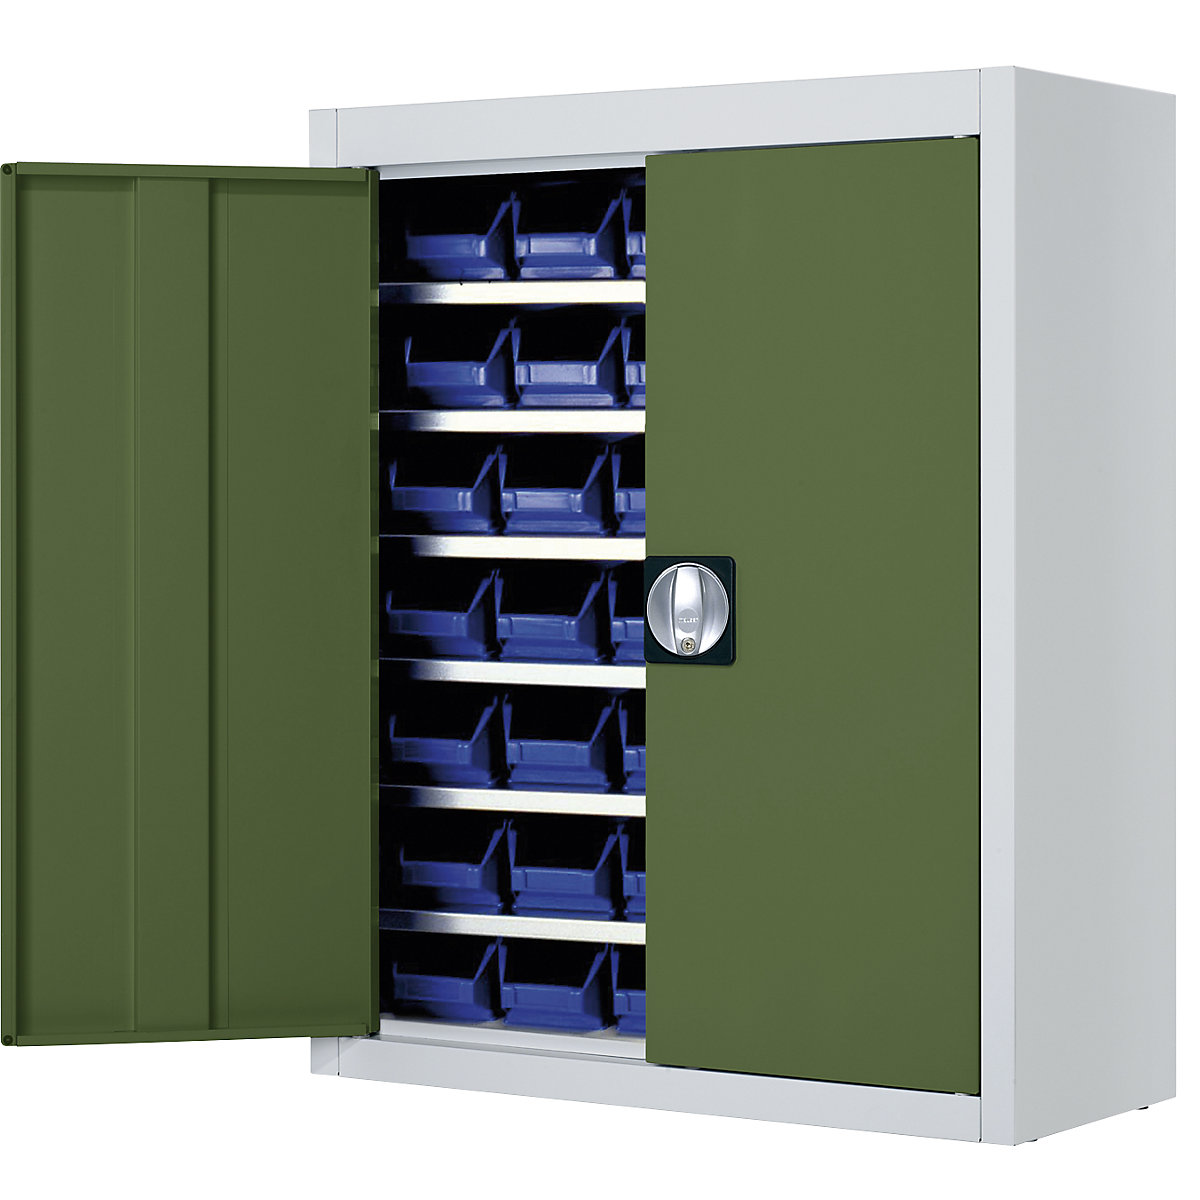 Skladiščna omara z odprtimi skladiščnimi posodami – mauser, VxŠxG 820 x 680 x 280 mm, dve barvi, korpus siv, vrata zelena, 42 posod-6